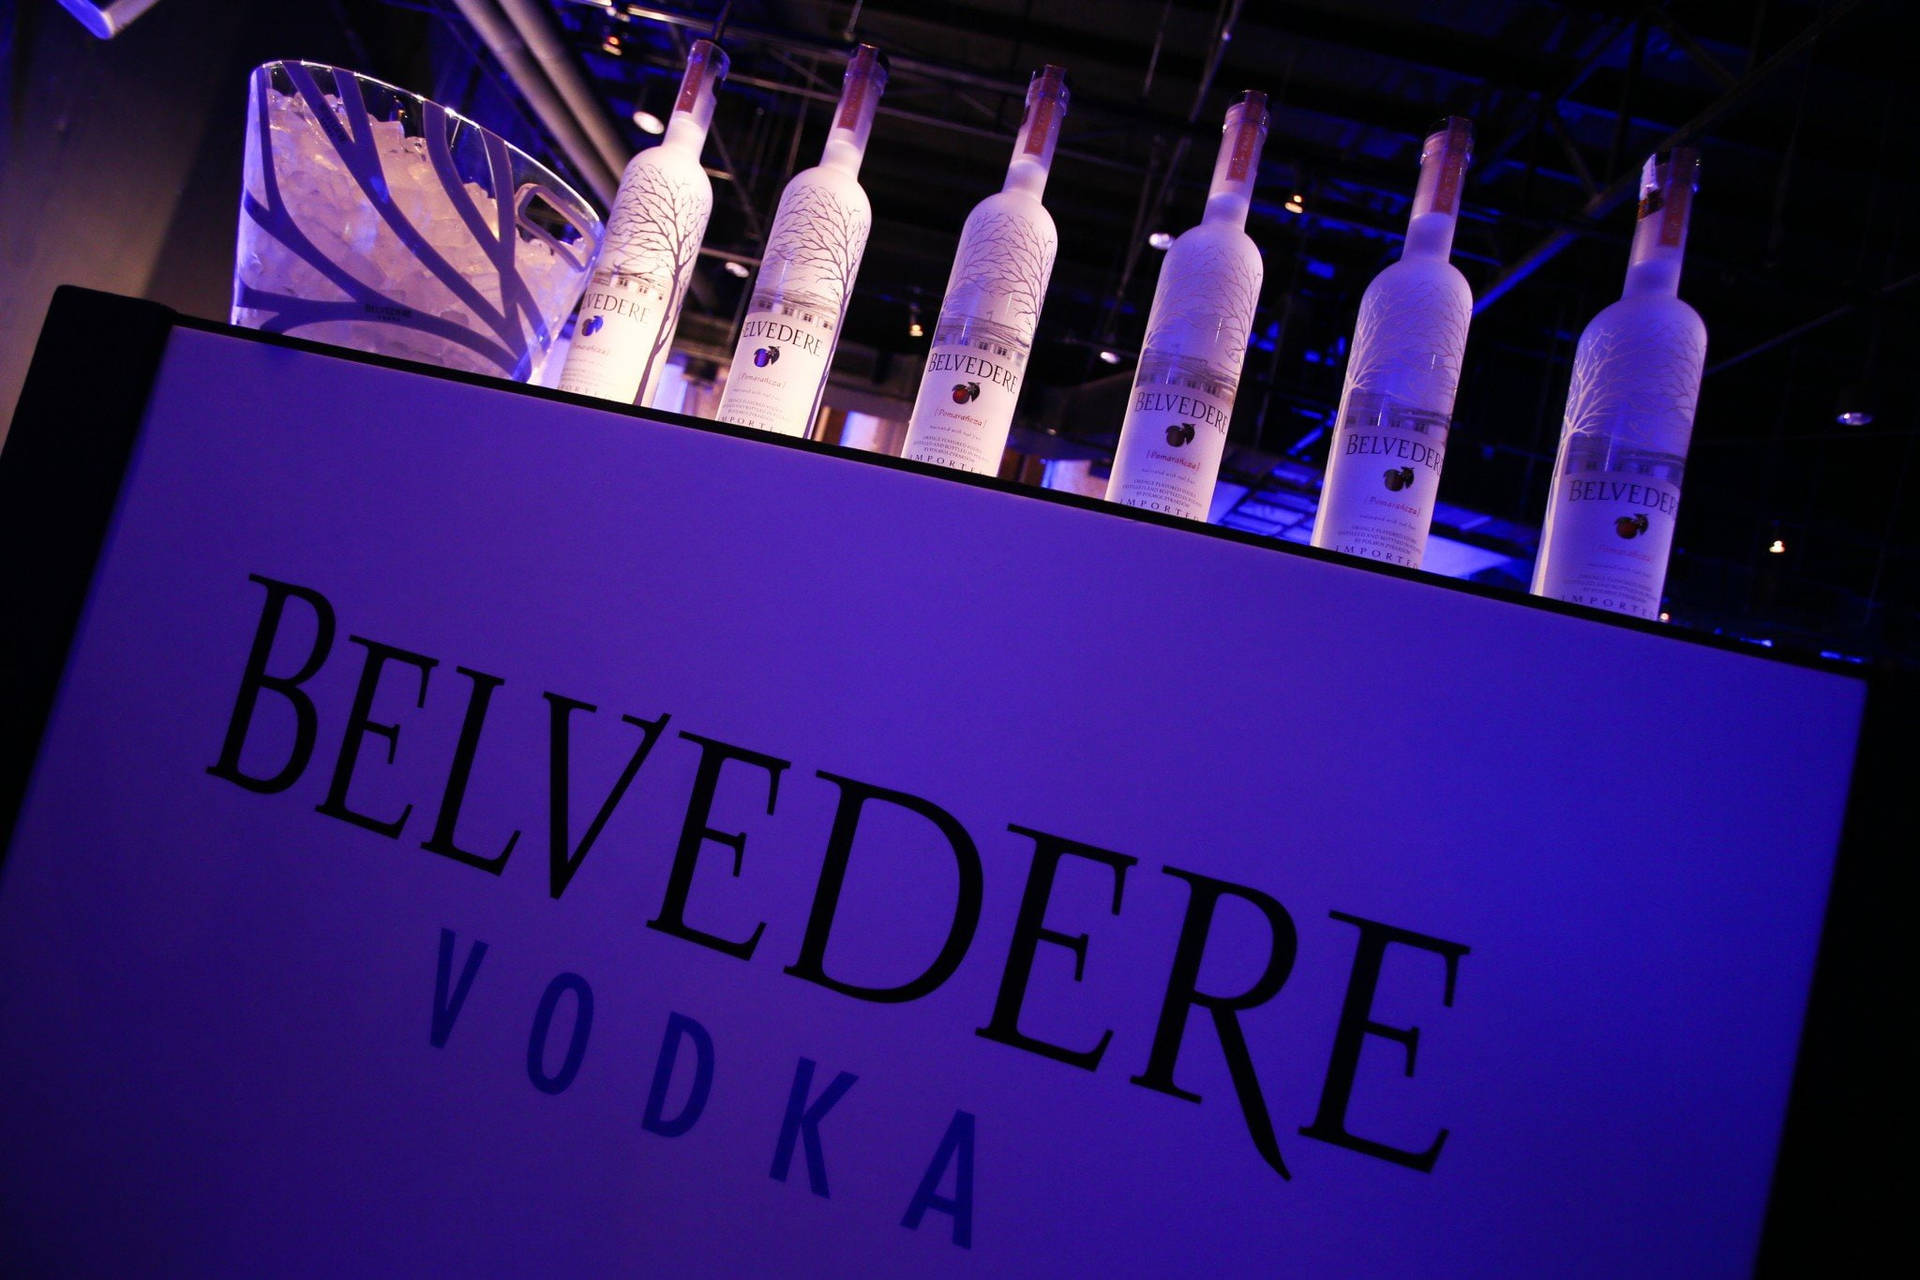 The Polish Belvedere Vodka Bottles Wallpaper